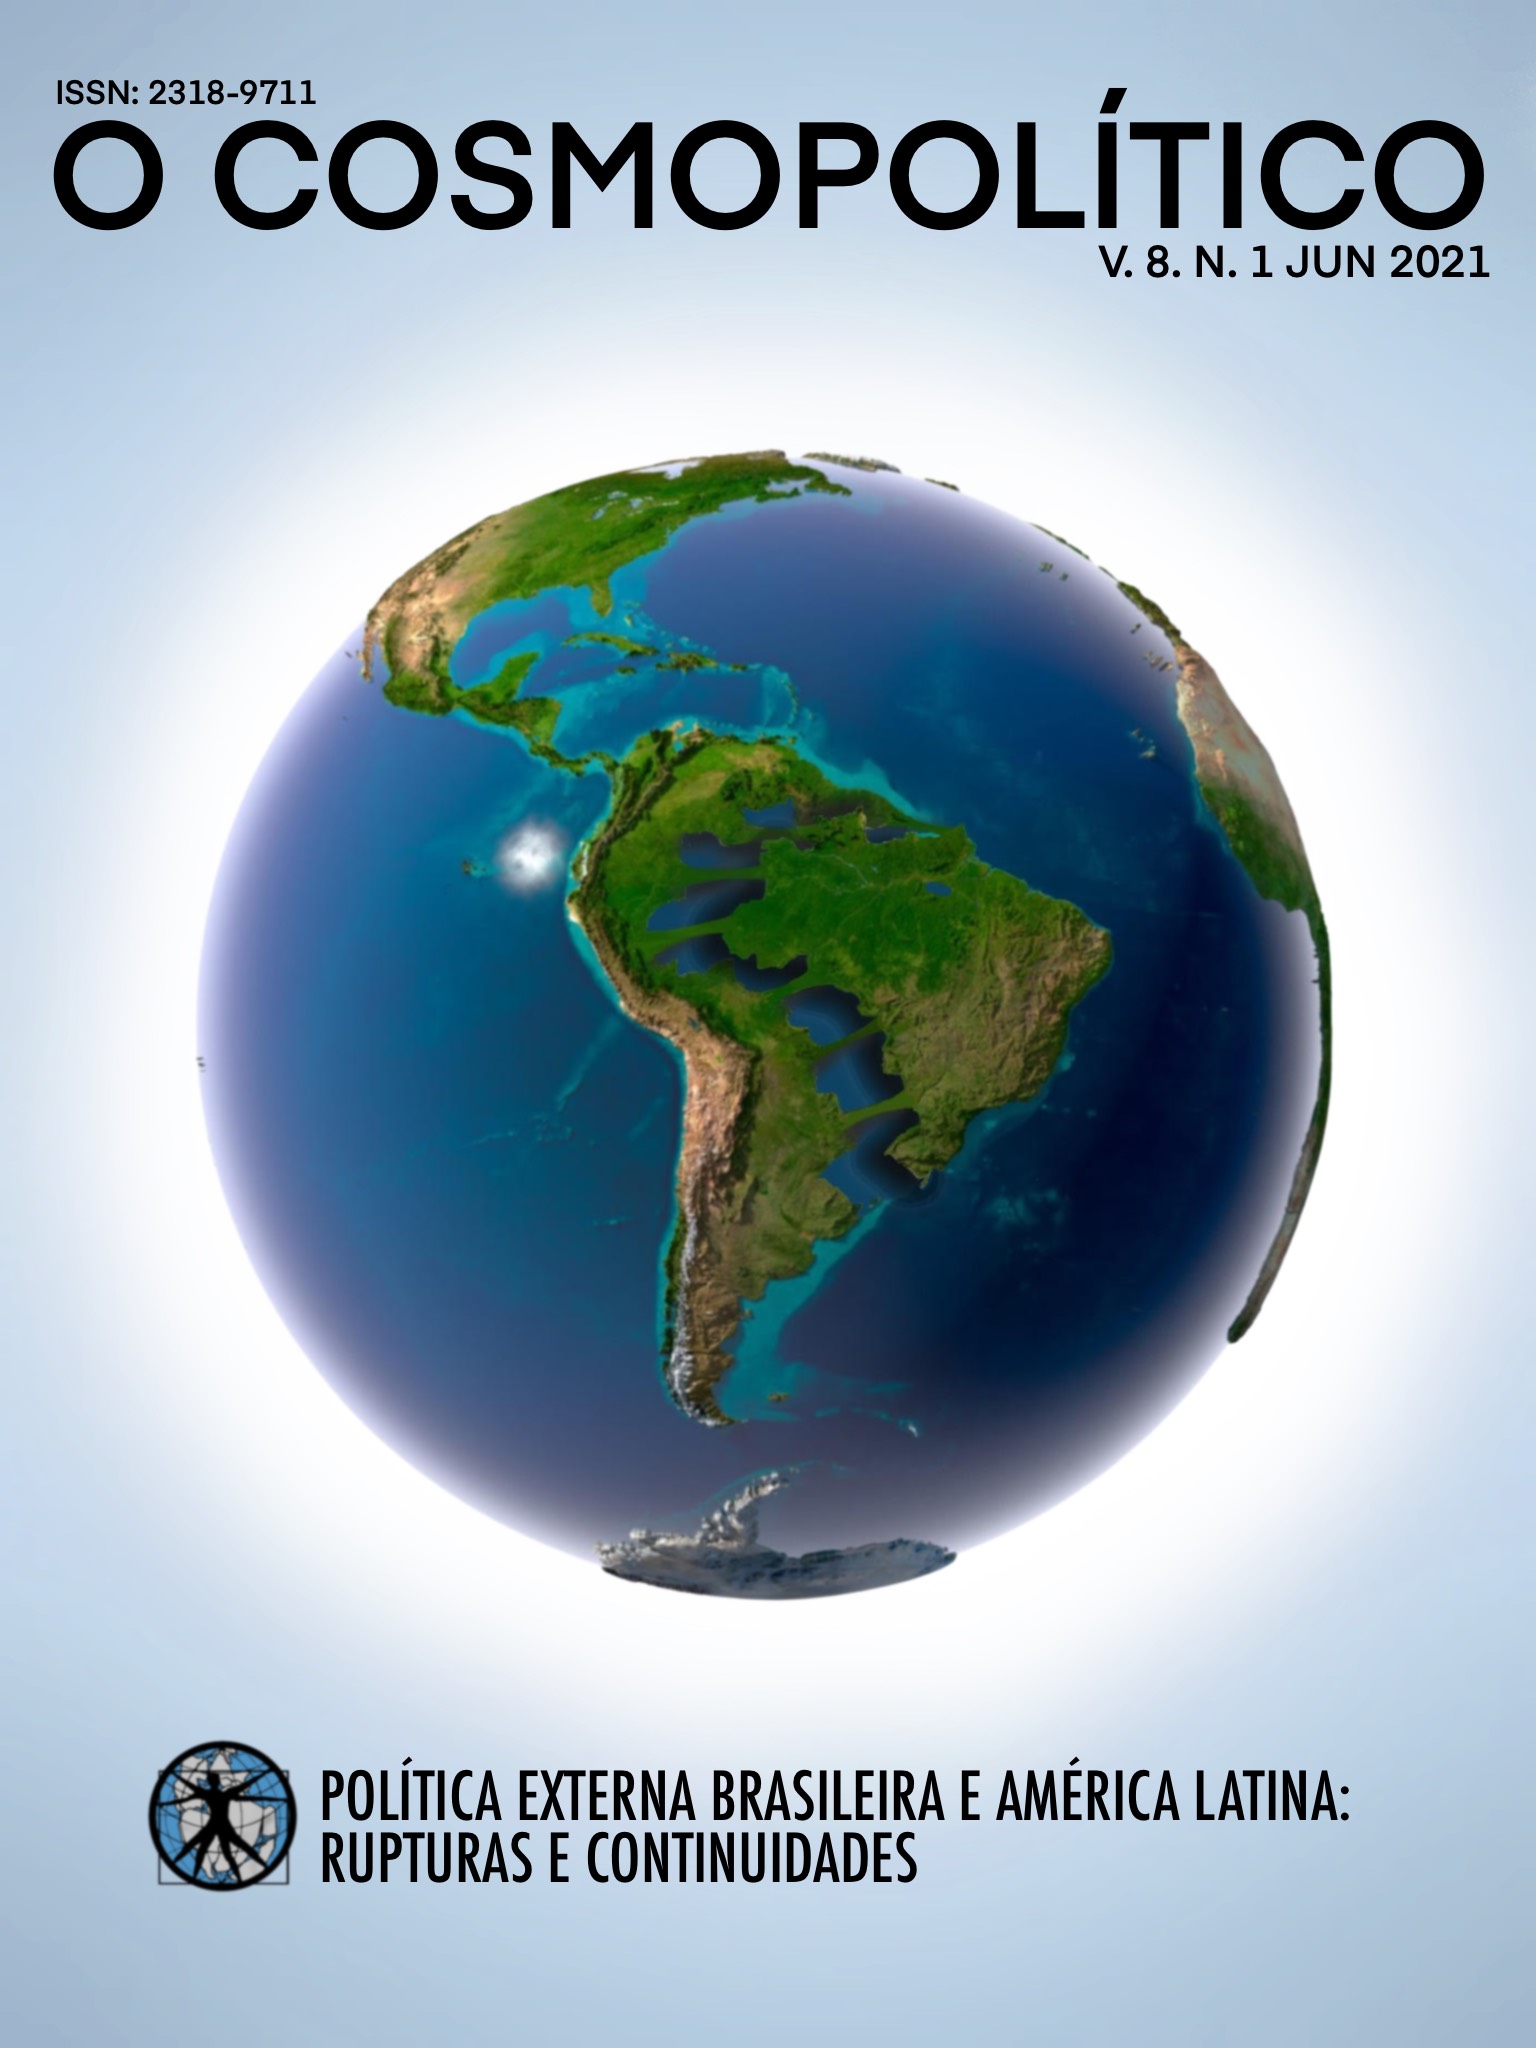 Imagem da capa: Globo terrestre com América do Sul em destaque e o Brasil se descolando da América Latina